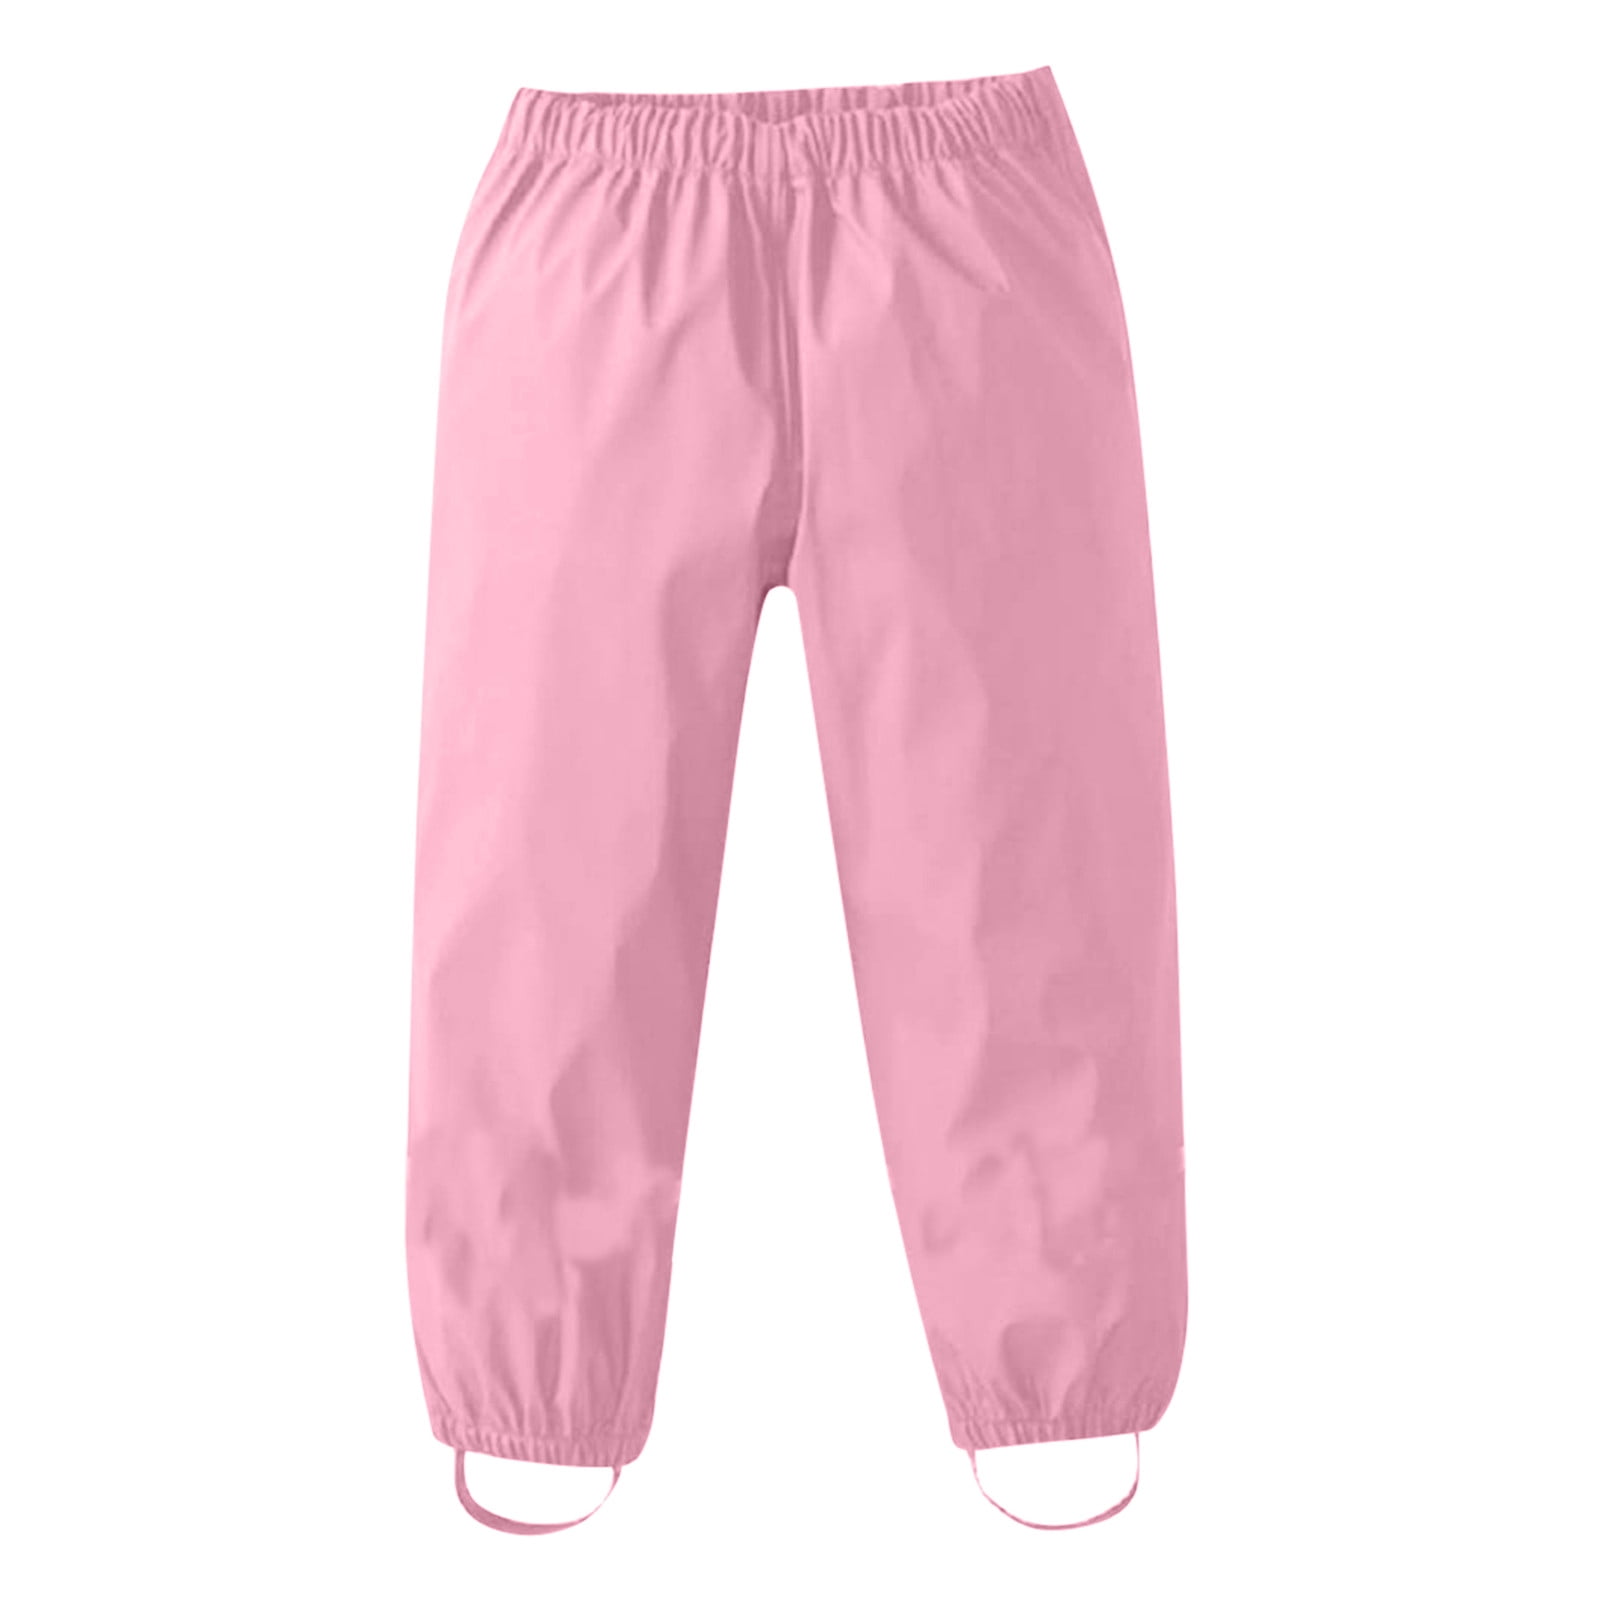 LZH Baby Girls Flower Waterproof Trouser Childrens Outwear Rain Pants 